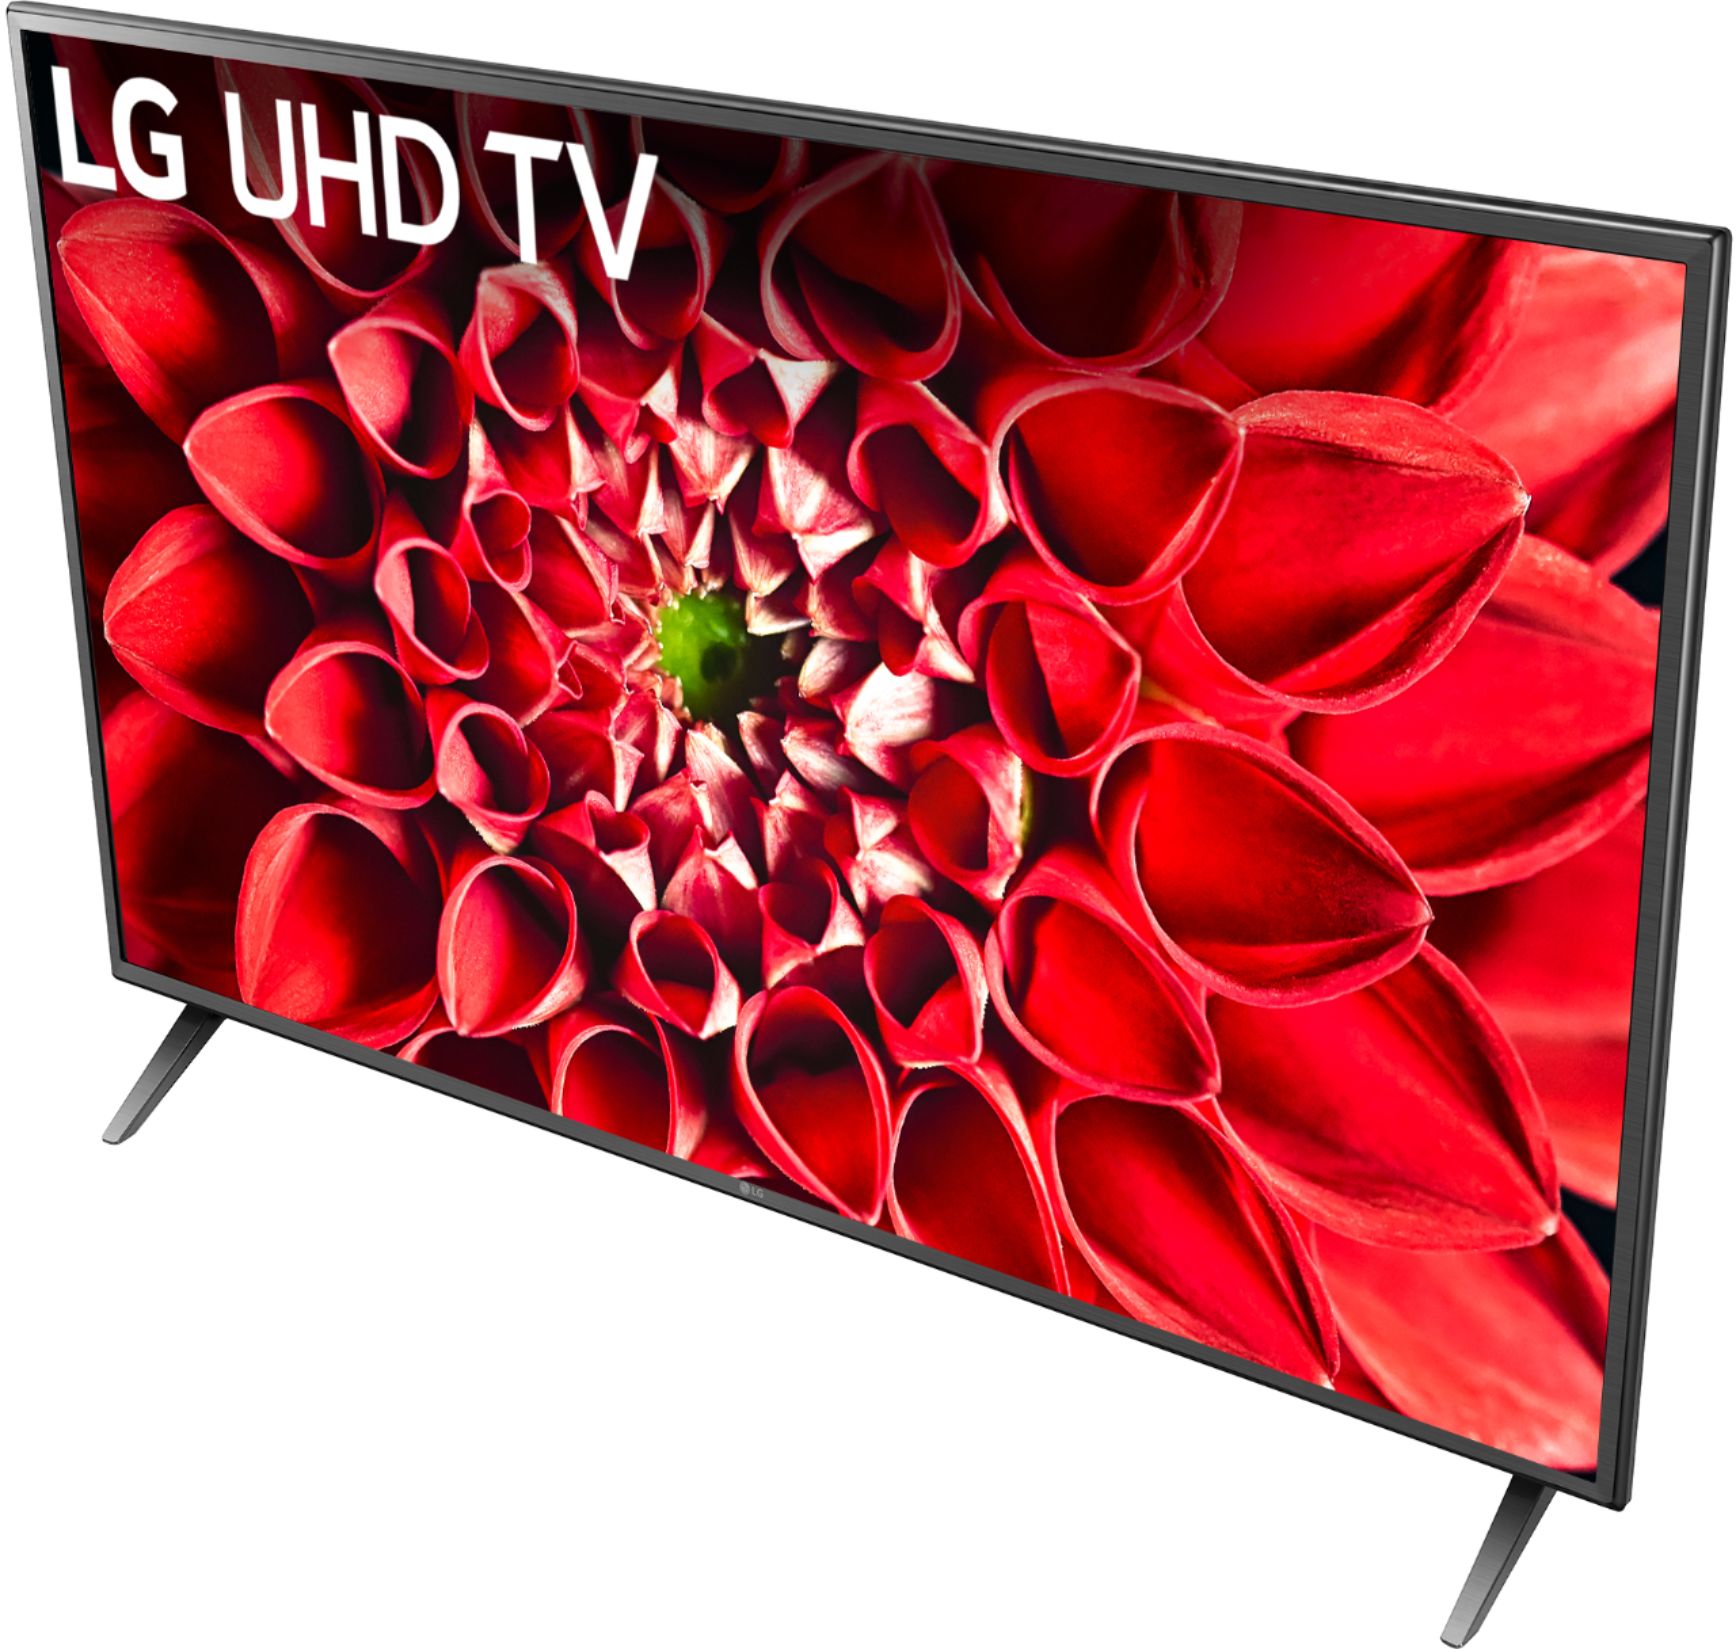 Best Buy: LG UN7000 Series LED 4K UHD Smart webOS TV 60UN7000PUB